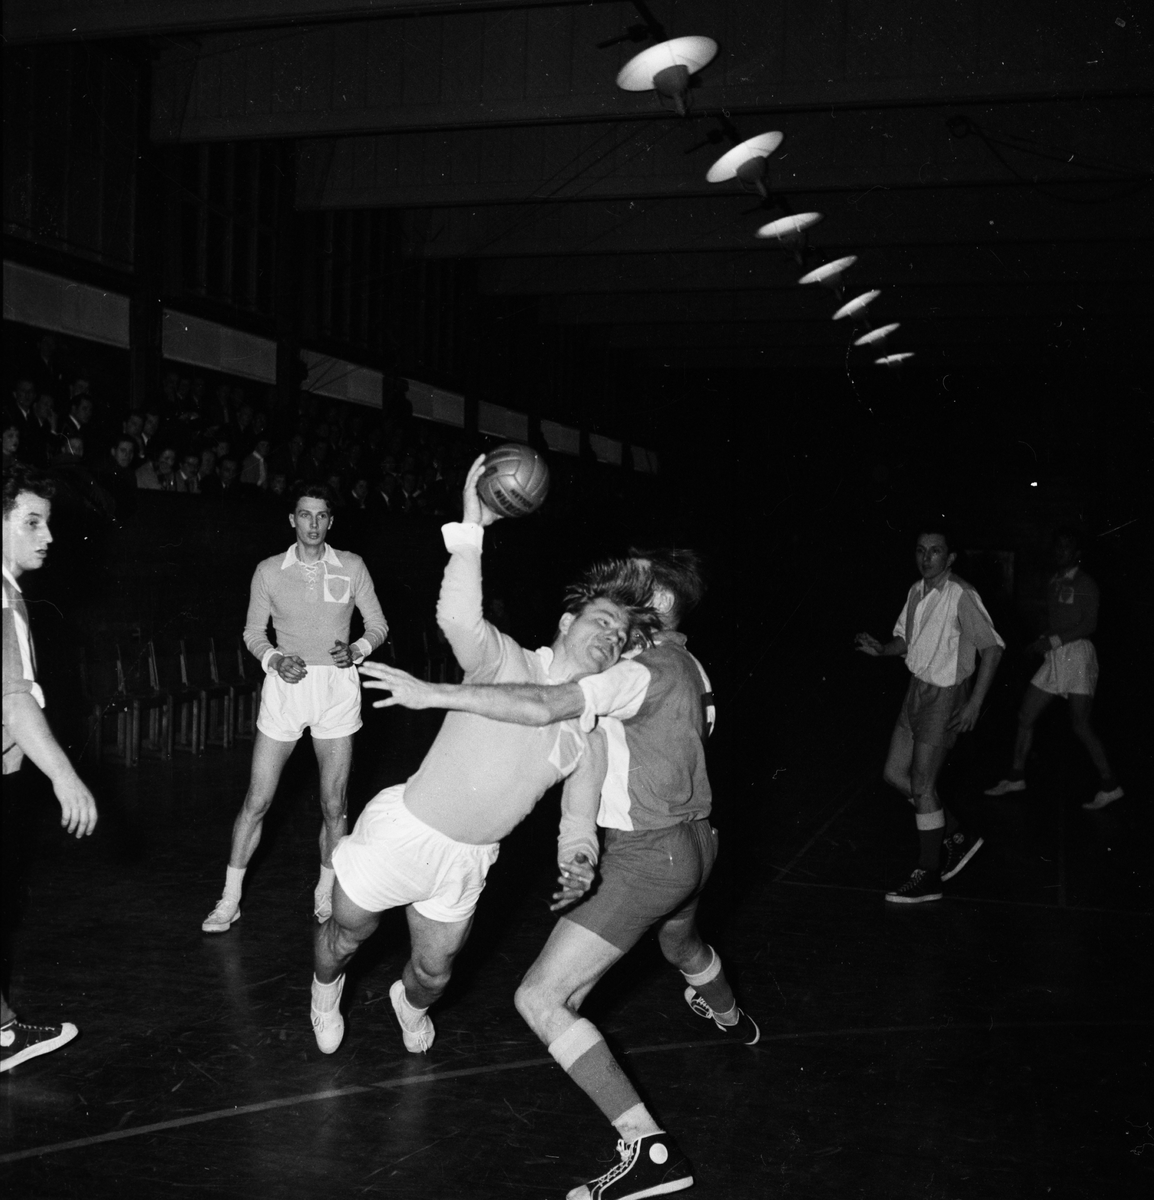 Handbollsmatch, sannolikt Uppsala 1955